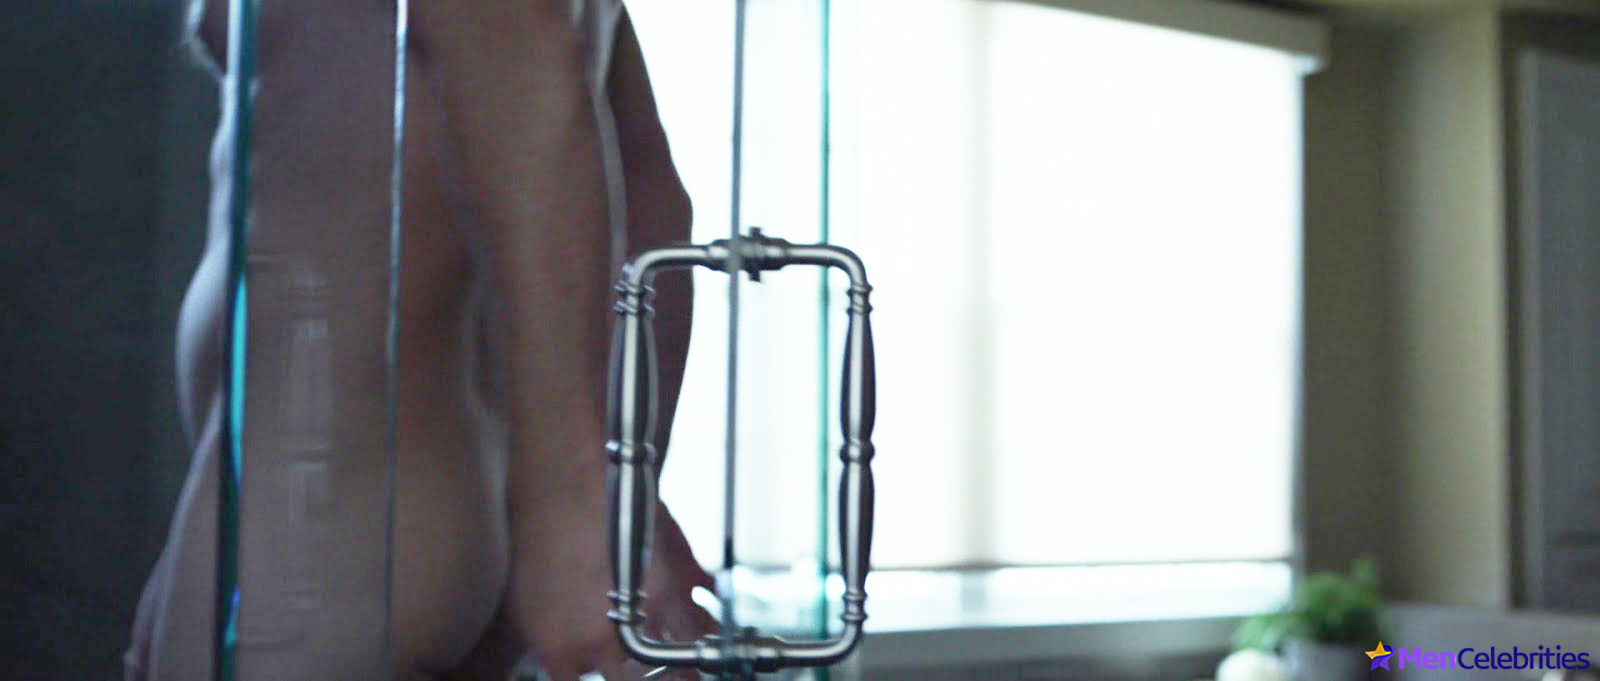 Ben Affleck frontal nude & sex scenes.